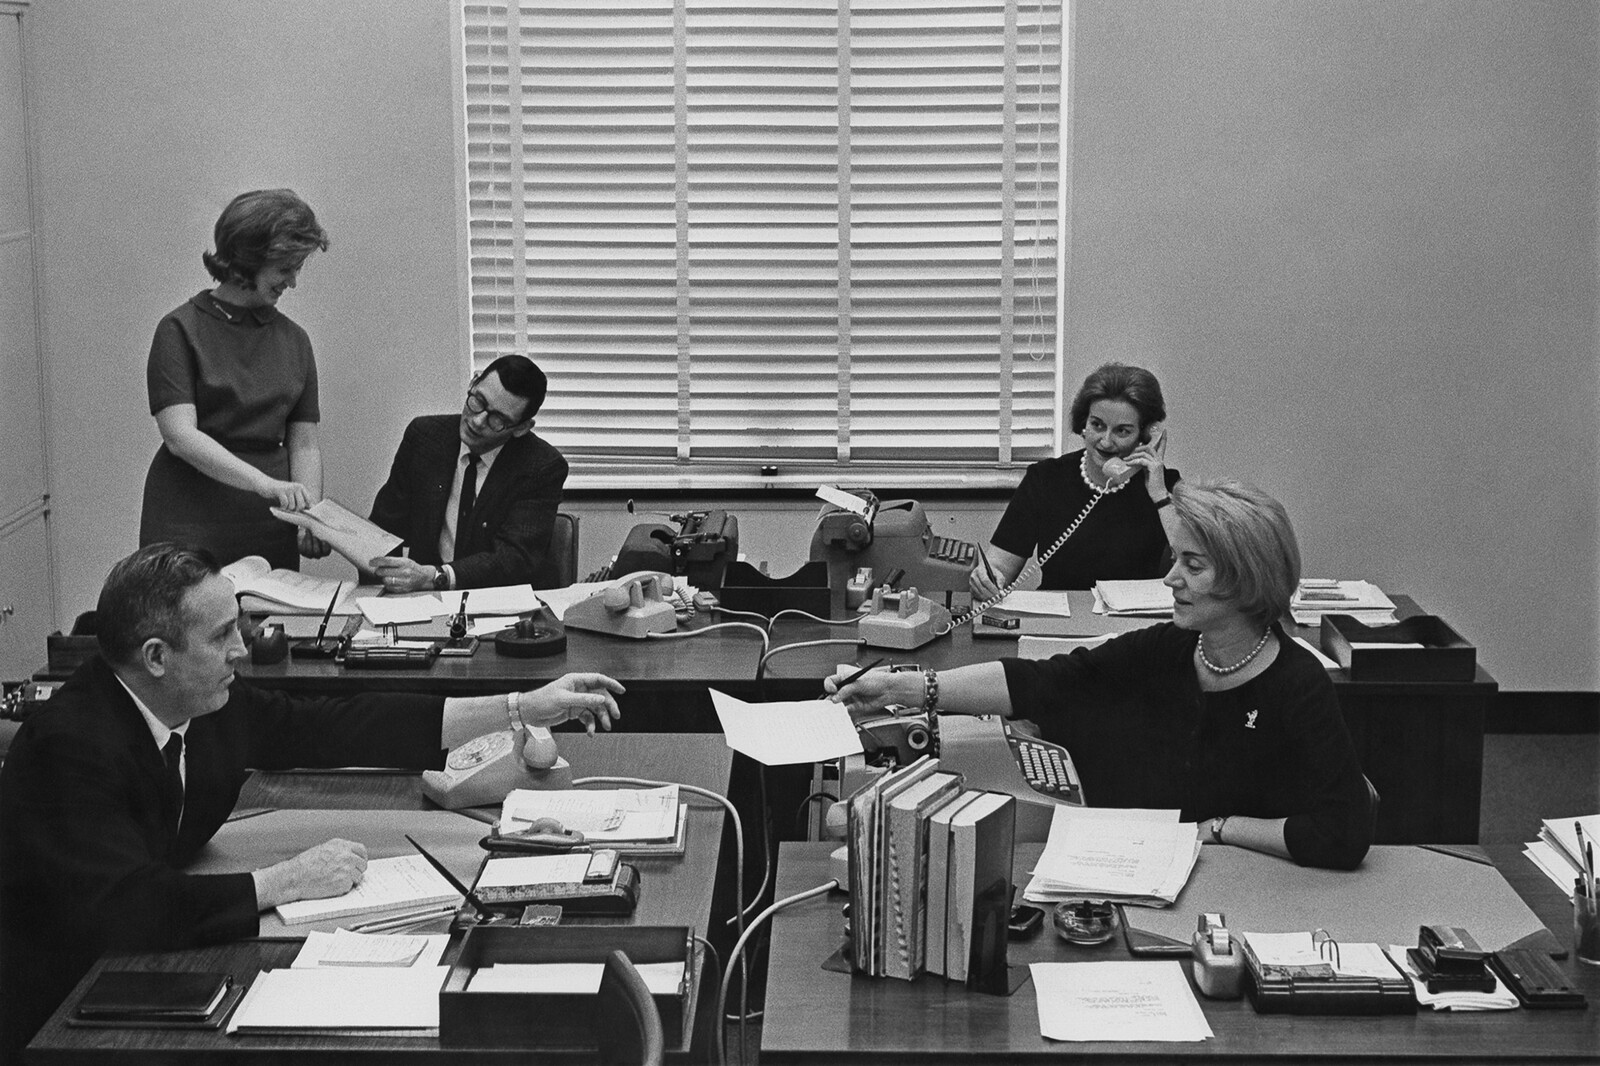 women in workplace in 1960s